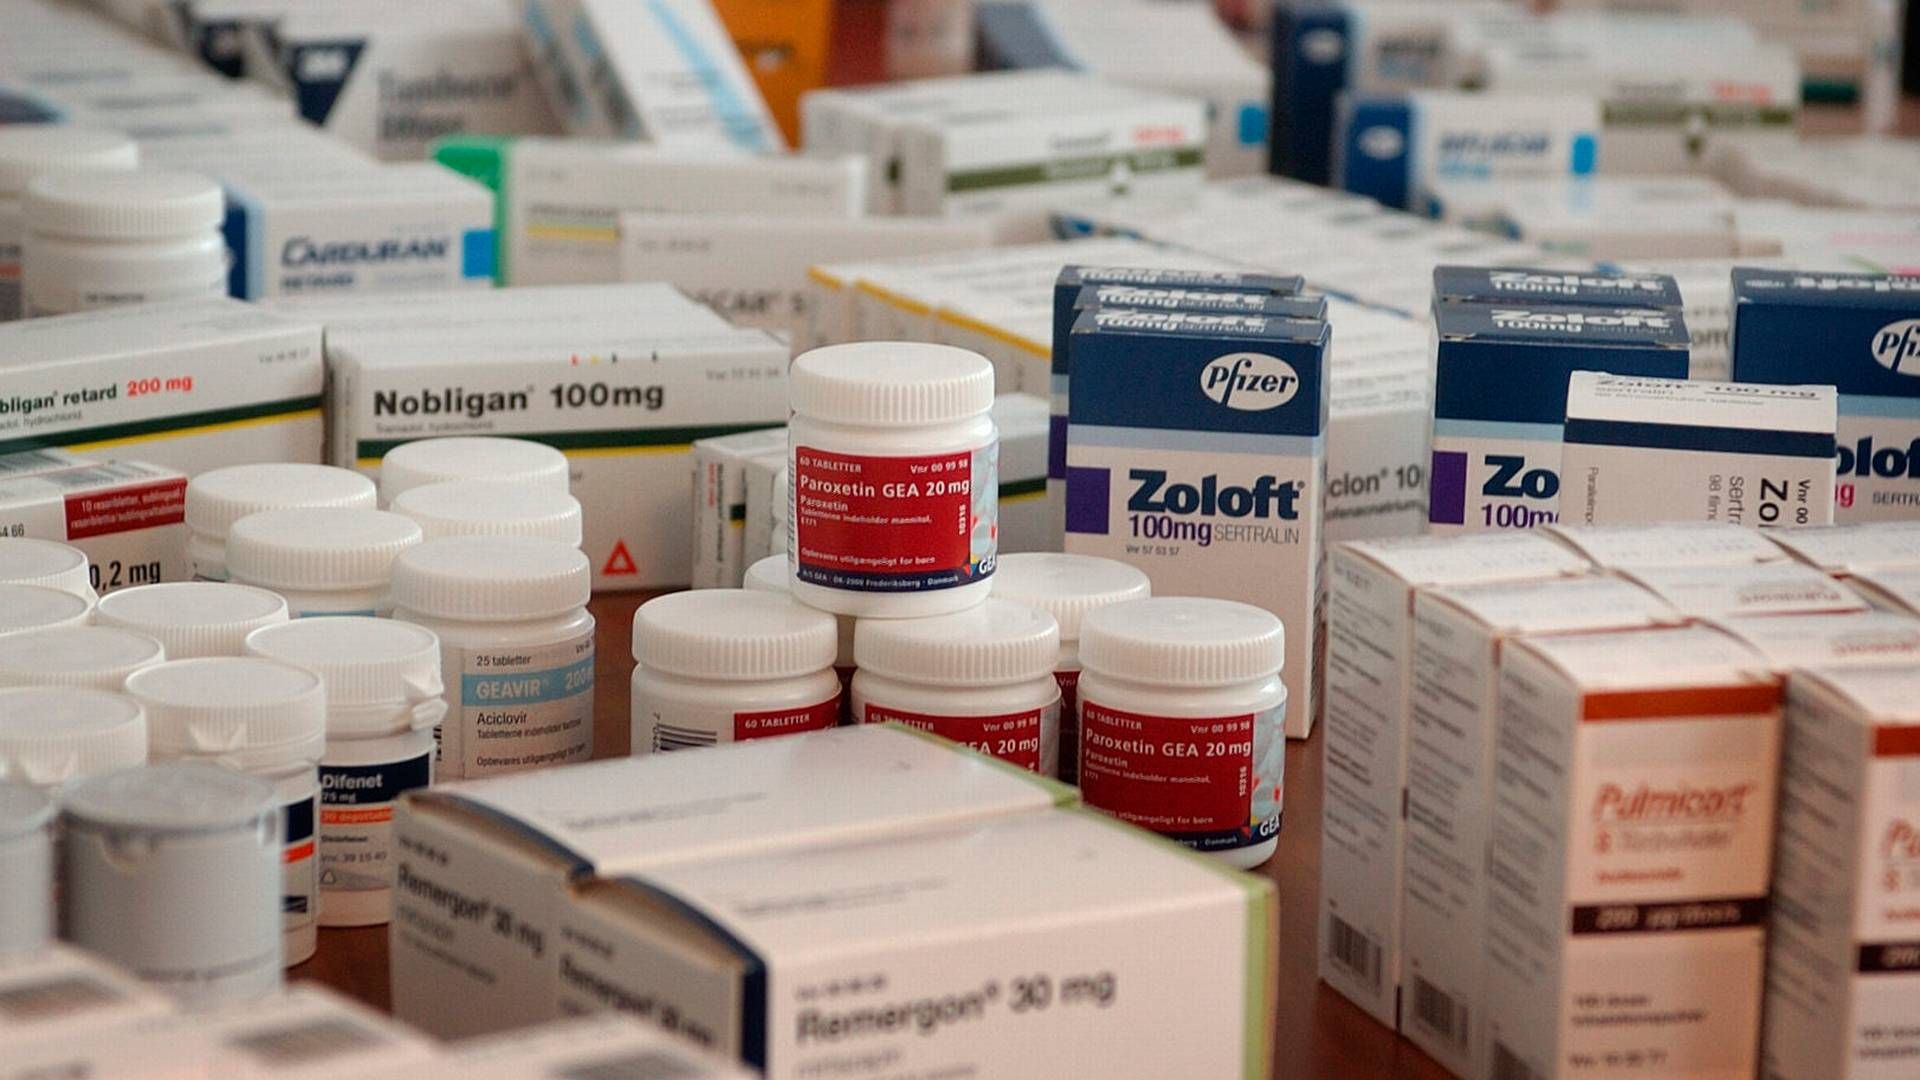 Priser på medicin i USA er steget med 27 pct. i gennemsnit i juli måned. | Foto: Finn Frandsen / Politiken / Ritzau Scanpix